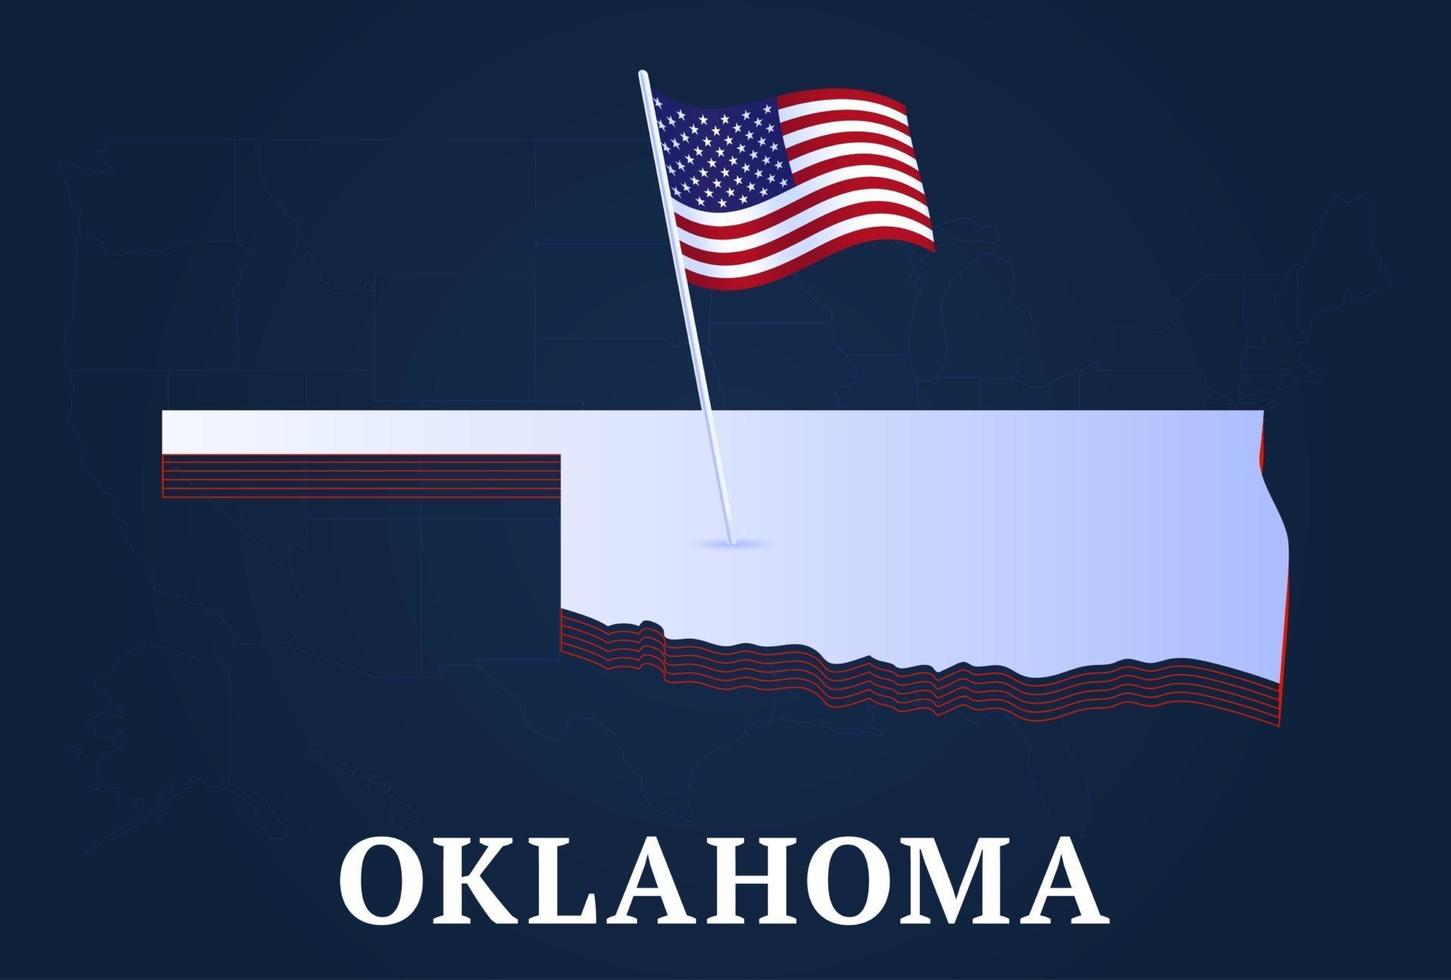 mapa isométrico do estado de oklahoma e bandeira nacional dos EUA forma isométrica em 3D de ilustração em vetor estado dos EUA